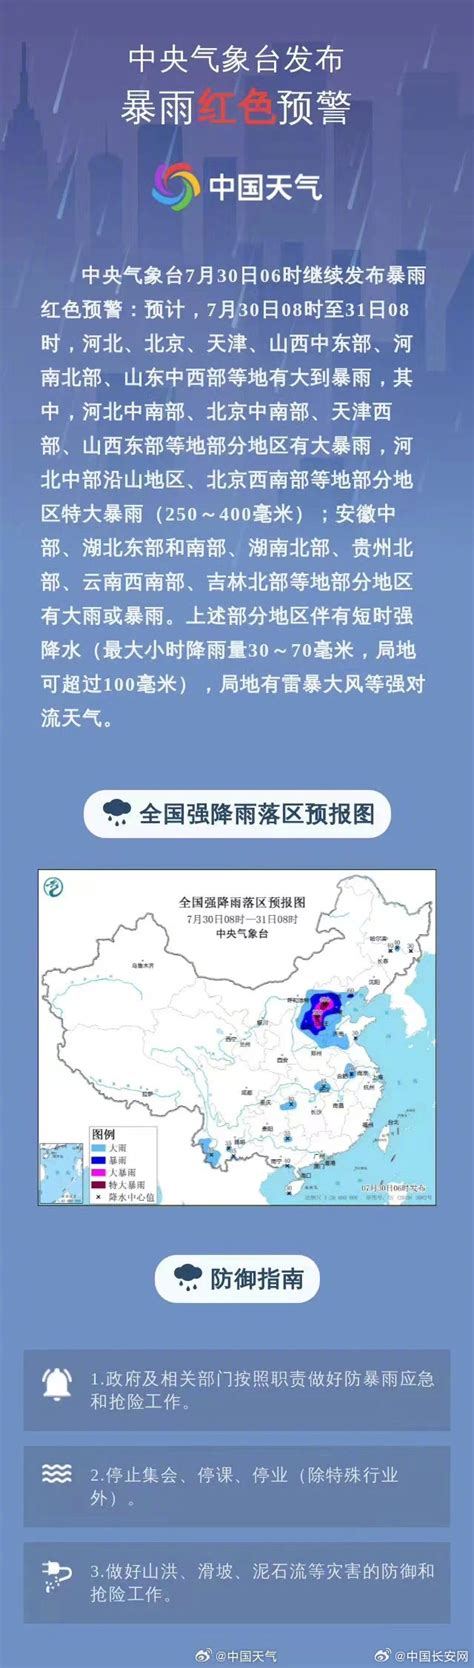 2019年中国外出农民工数量、农民工流向、地区分布及构成情况分析[图]_智研咨询